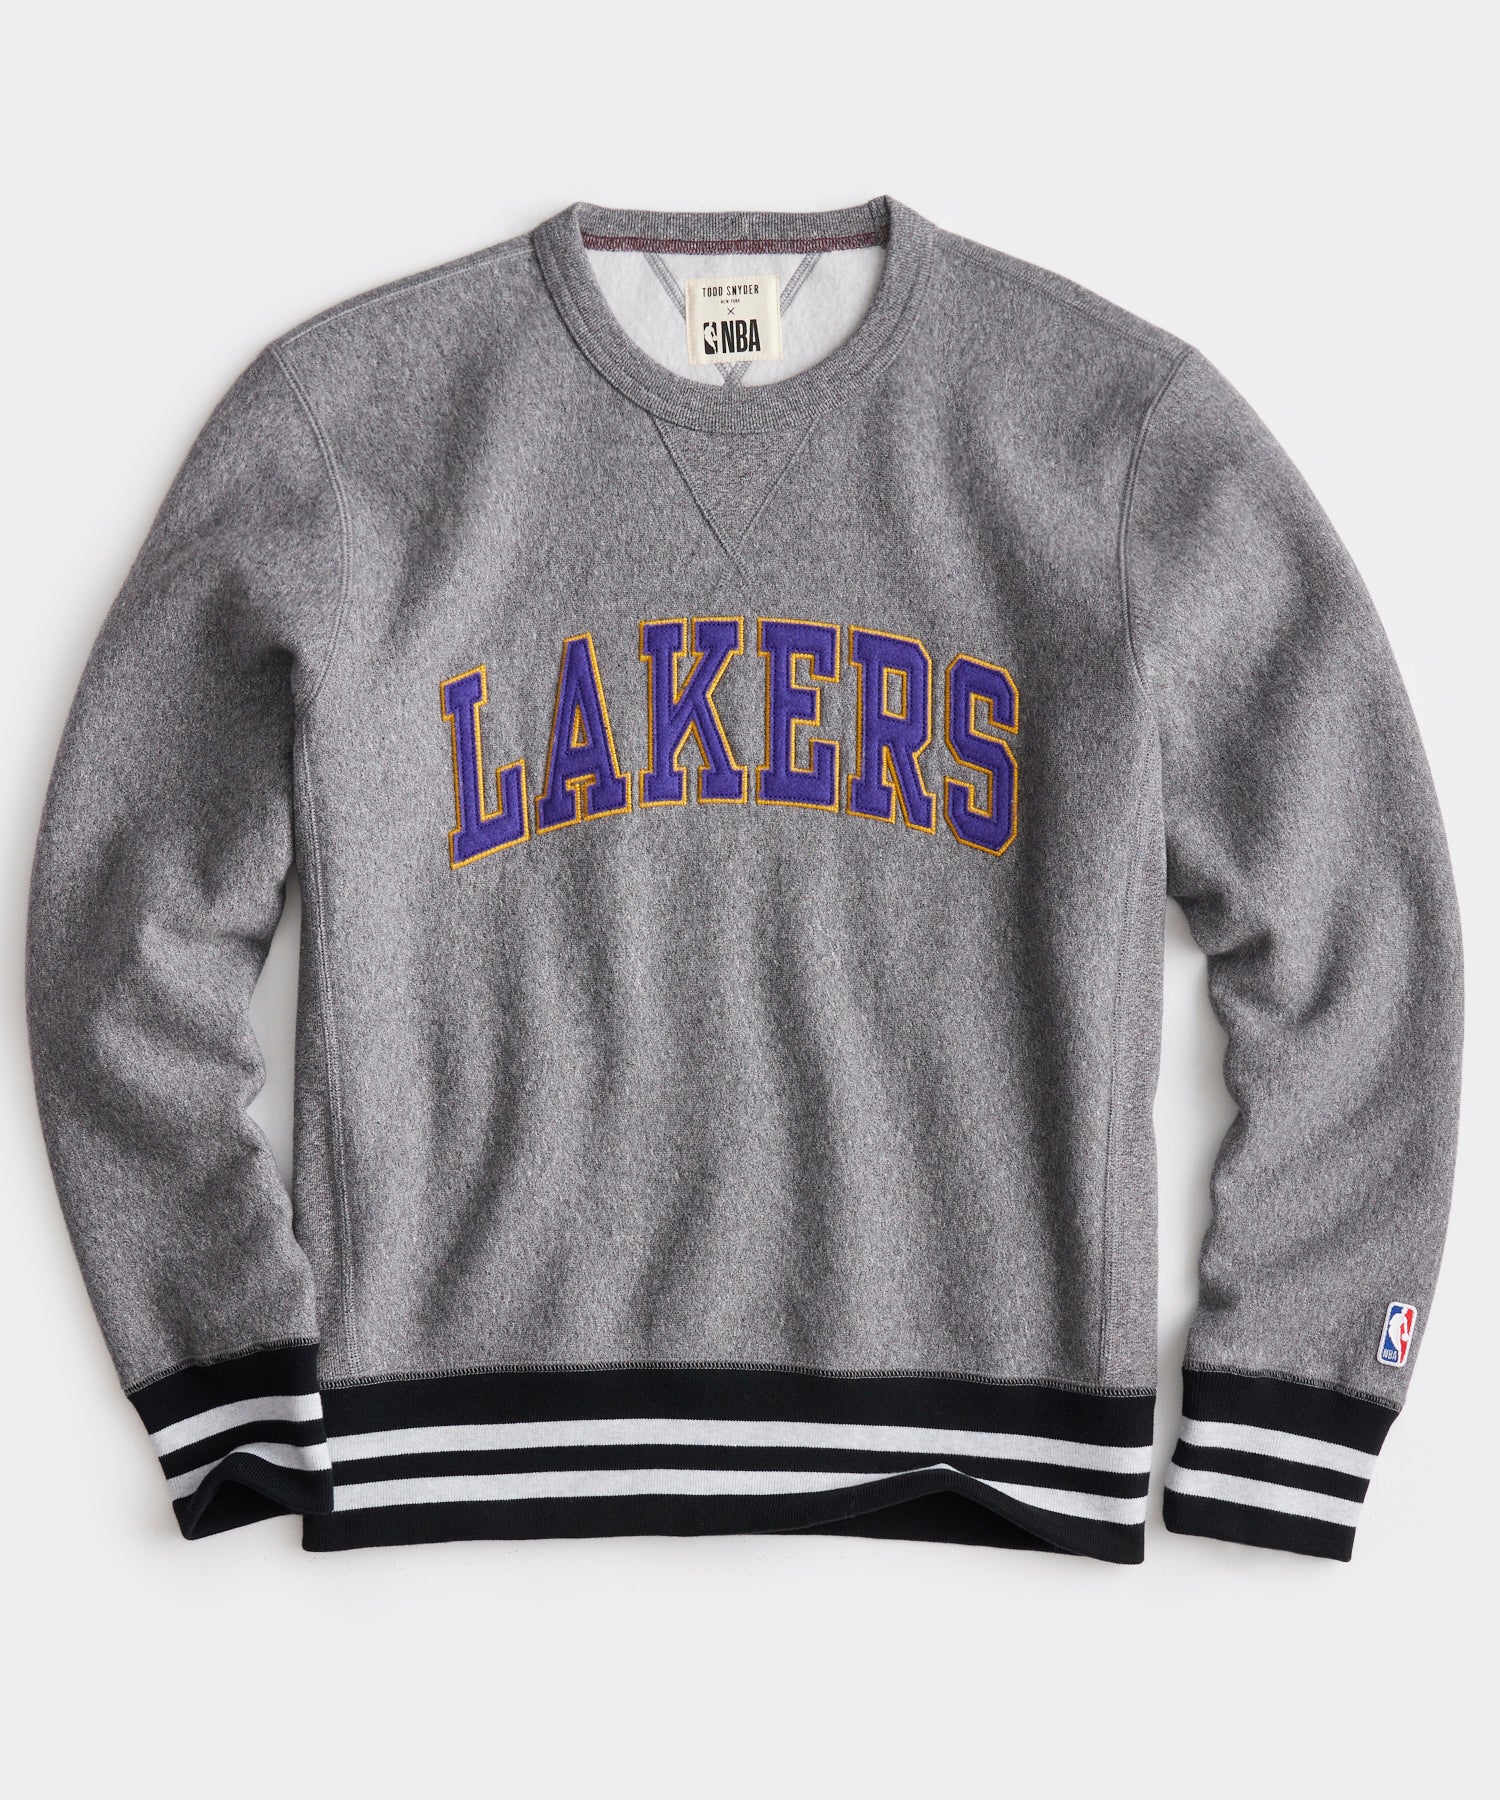 New Era Top 6 Los Angeles Lakers HD Hoodie (heather gray)